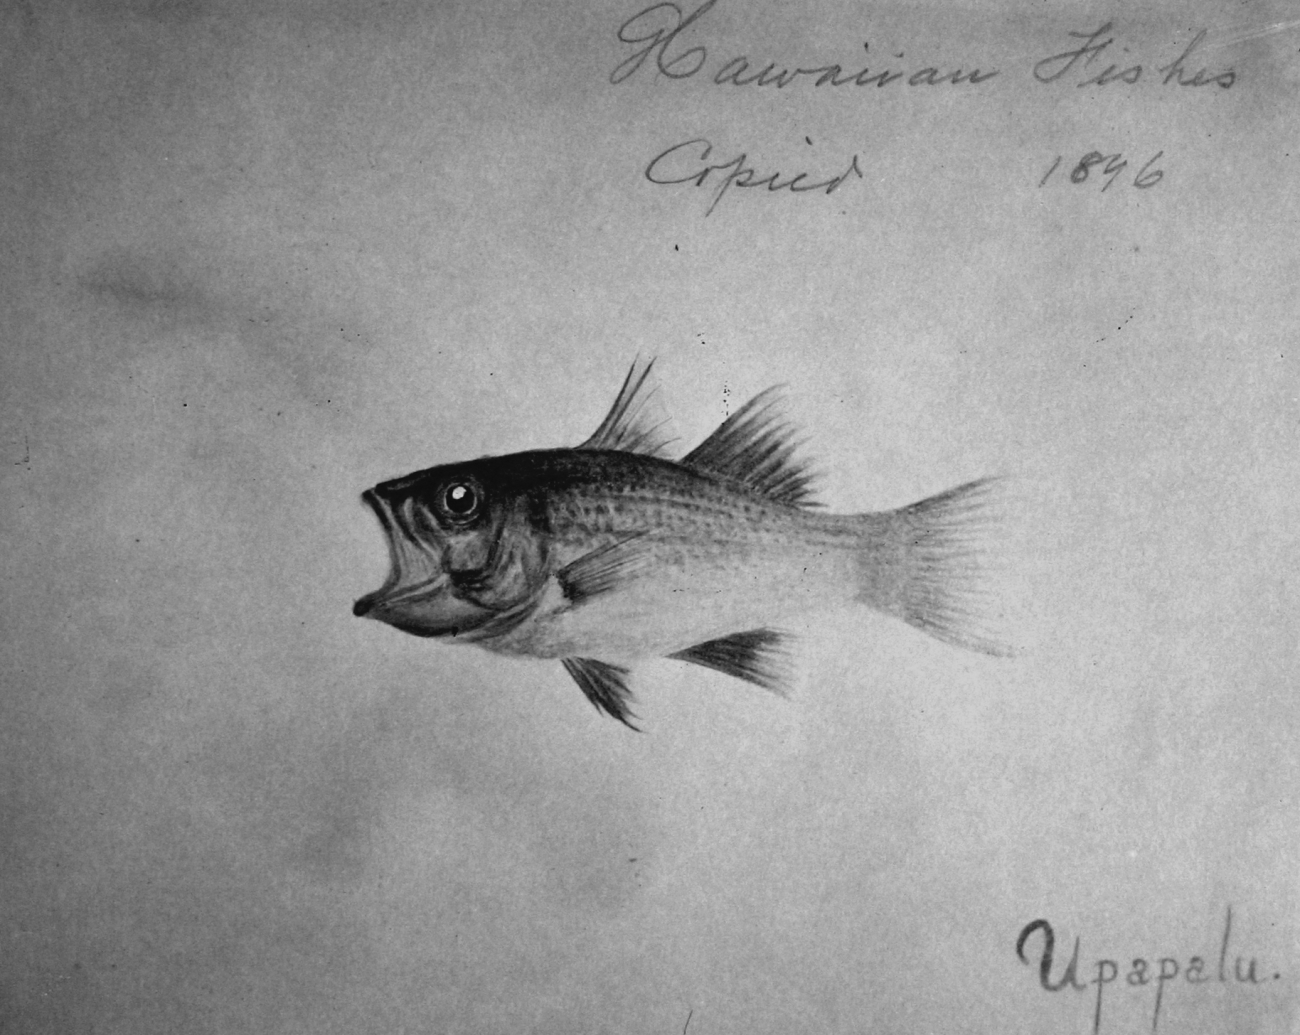 Hawaiian fishes, 1896, Uppapalu